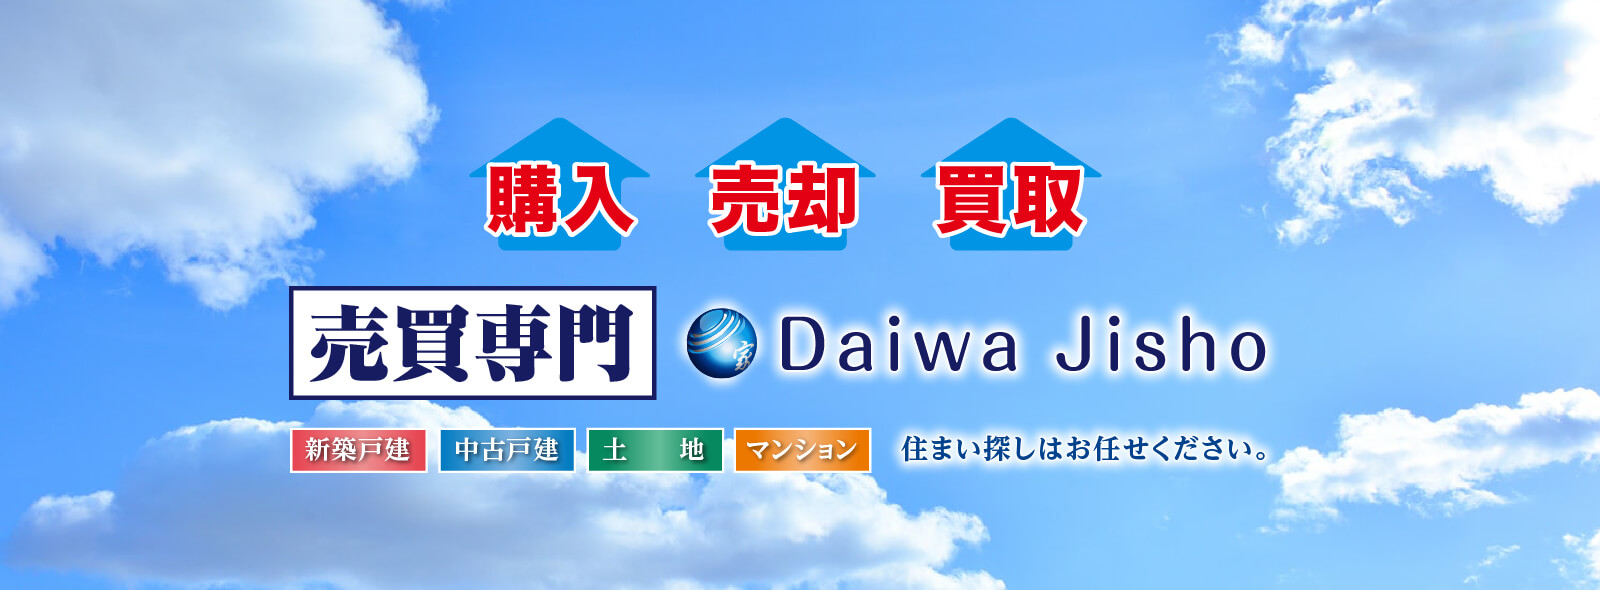 購入 売却 買取 売買専門 Daiwa Jisho 新築戸建 中古戸建 土地 マンション 住まい探しはお任せください。